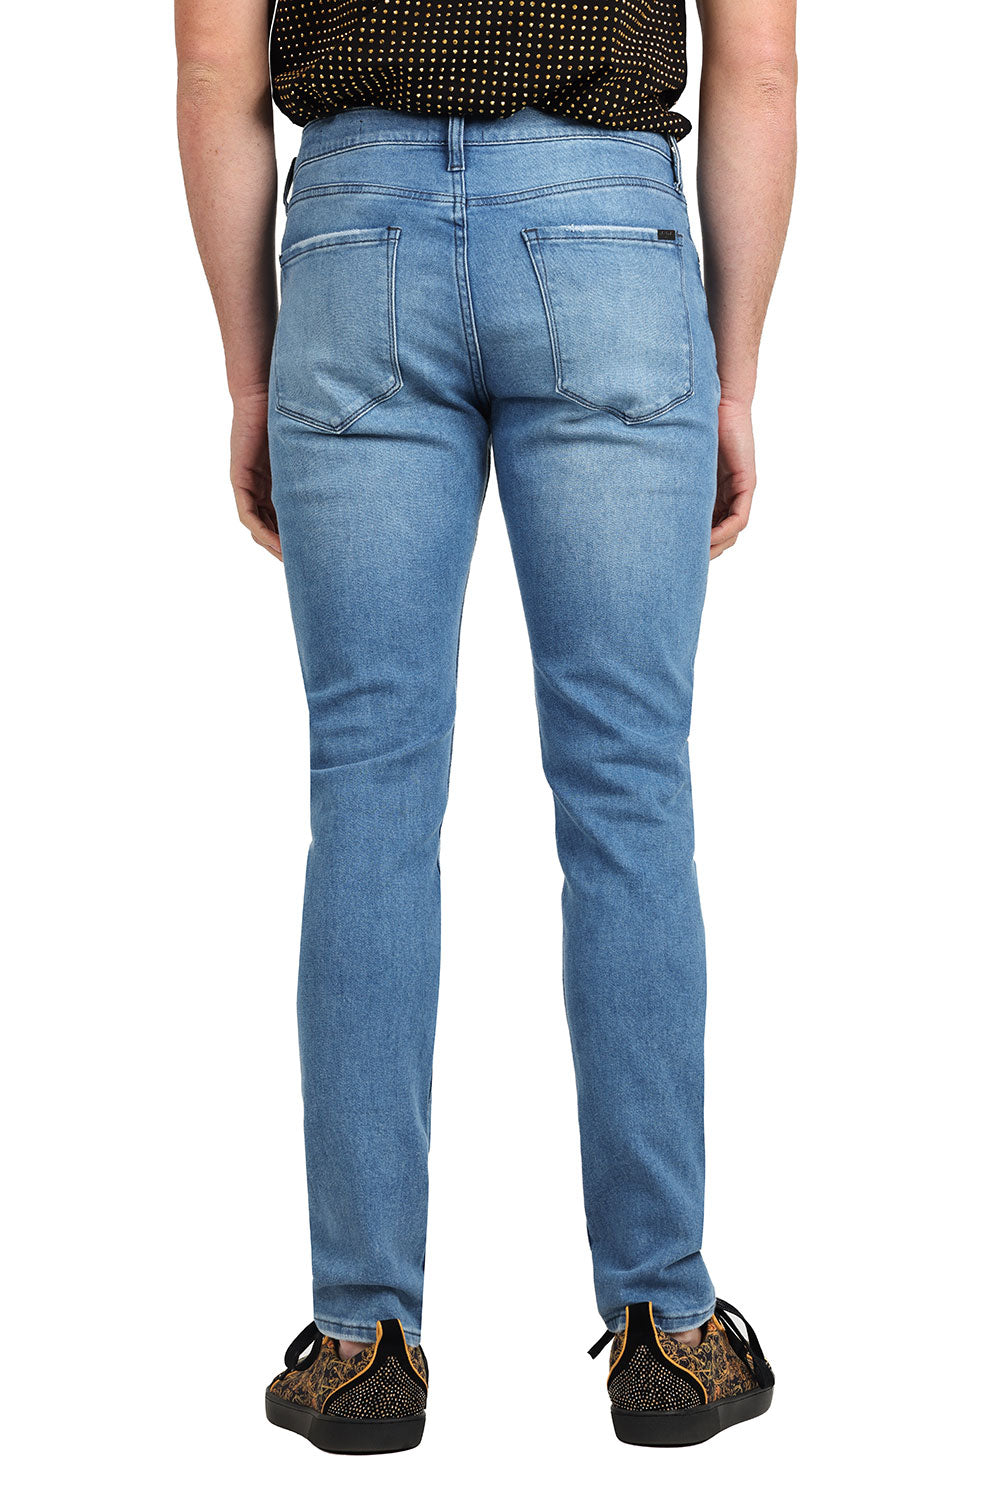 Barabas Men's Solid Color Classic Workforce Denim Jeans 2JE11SL Blue